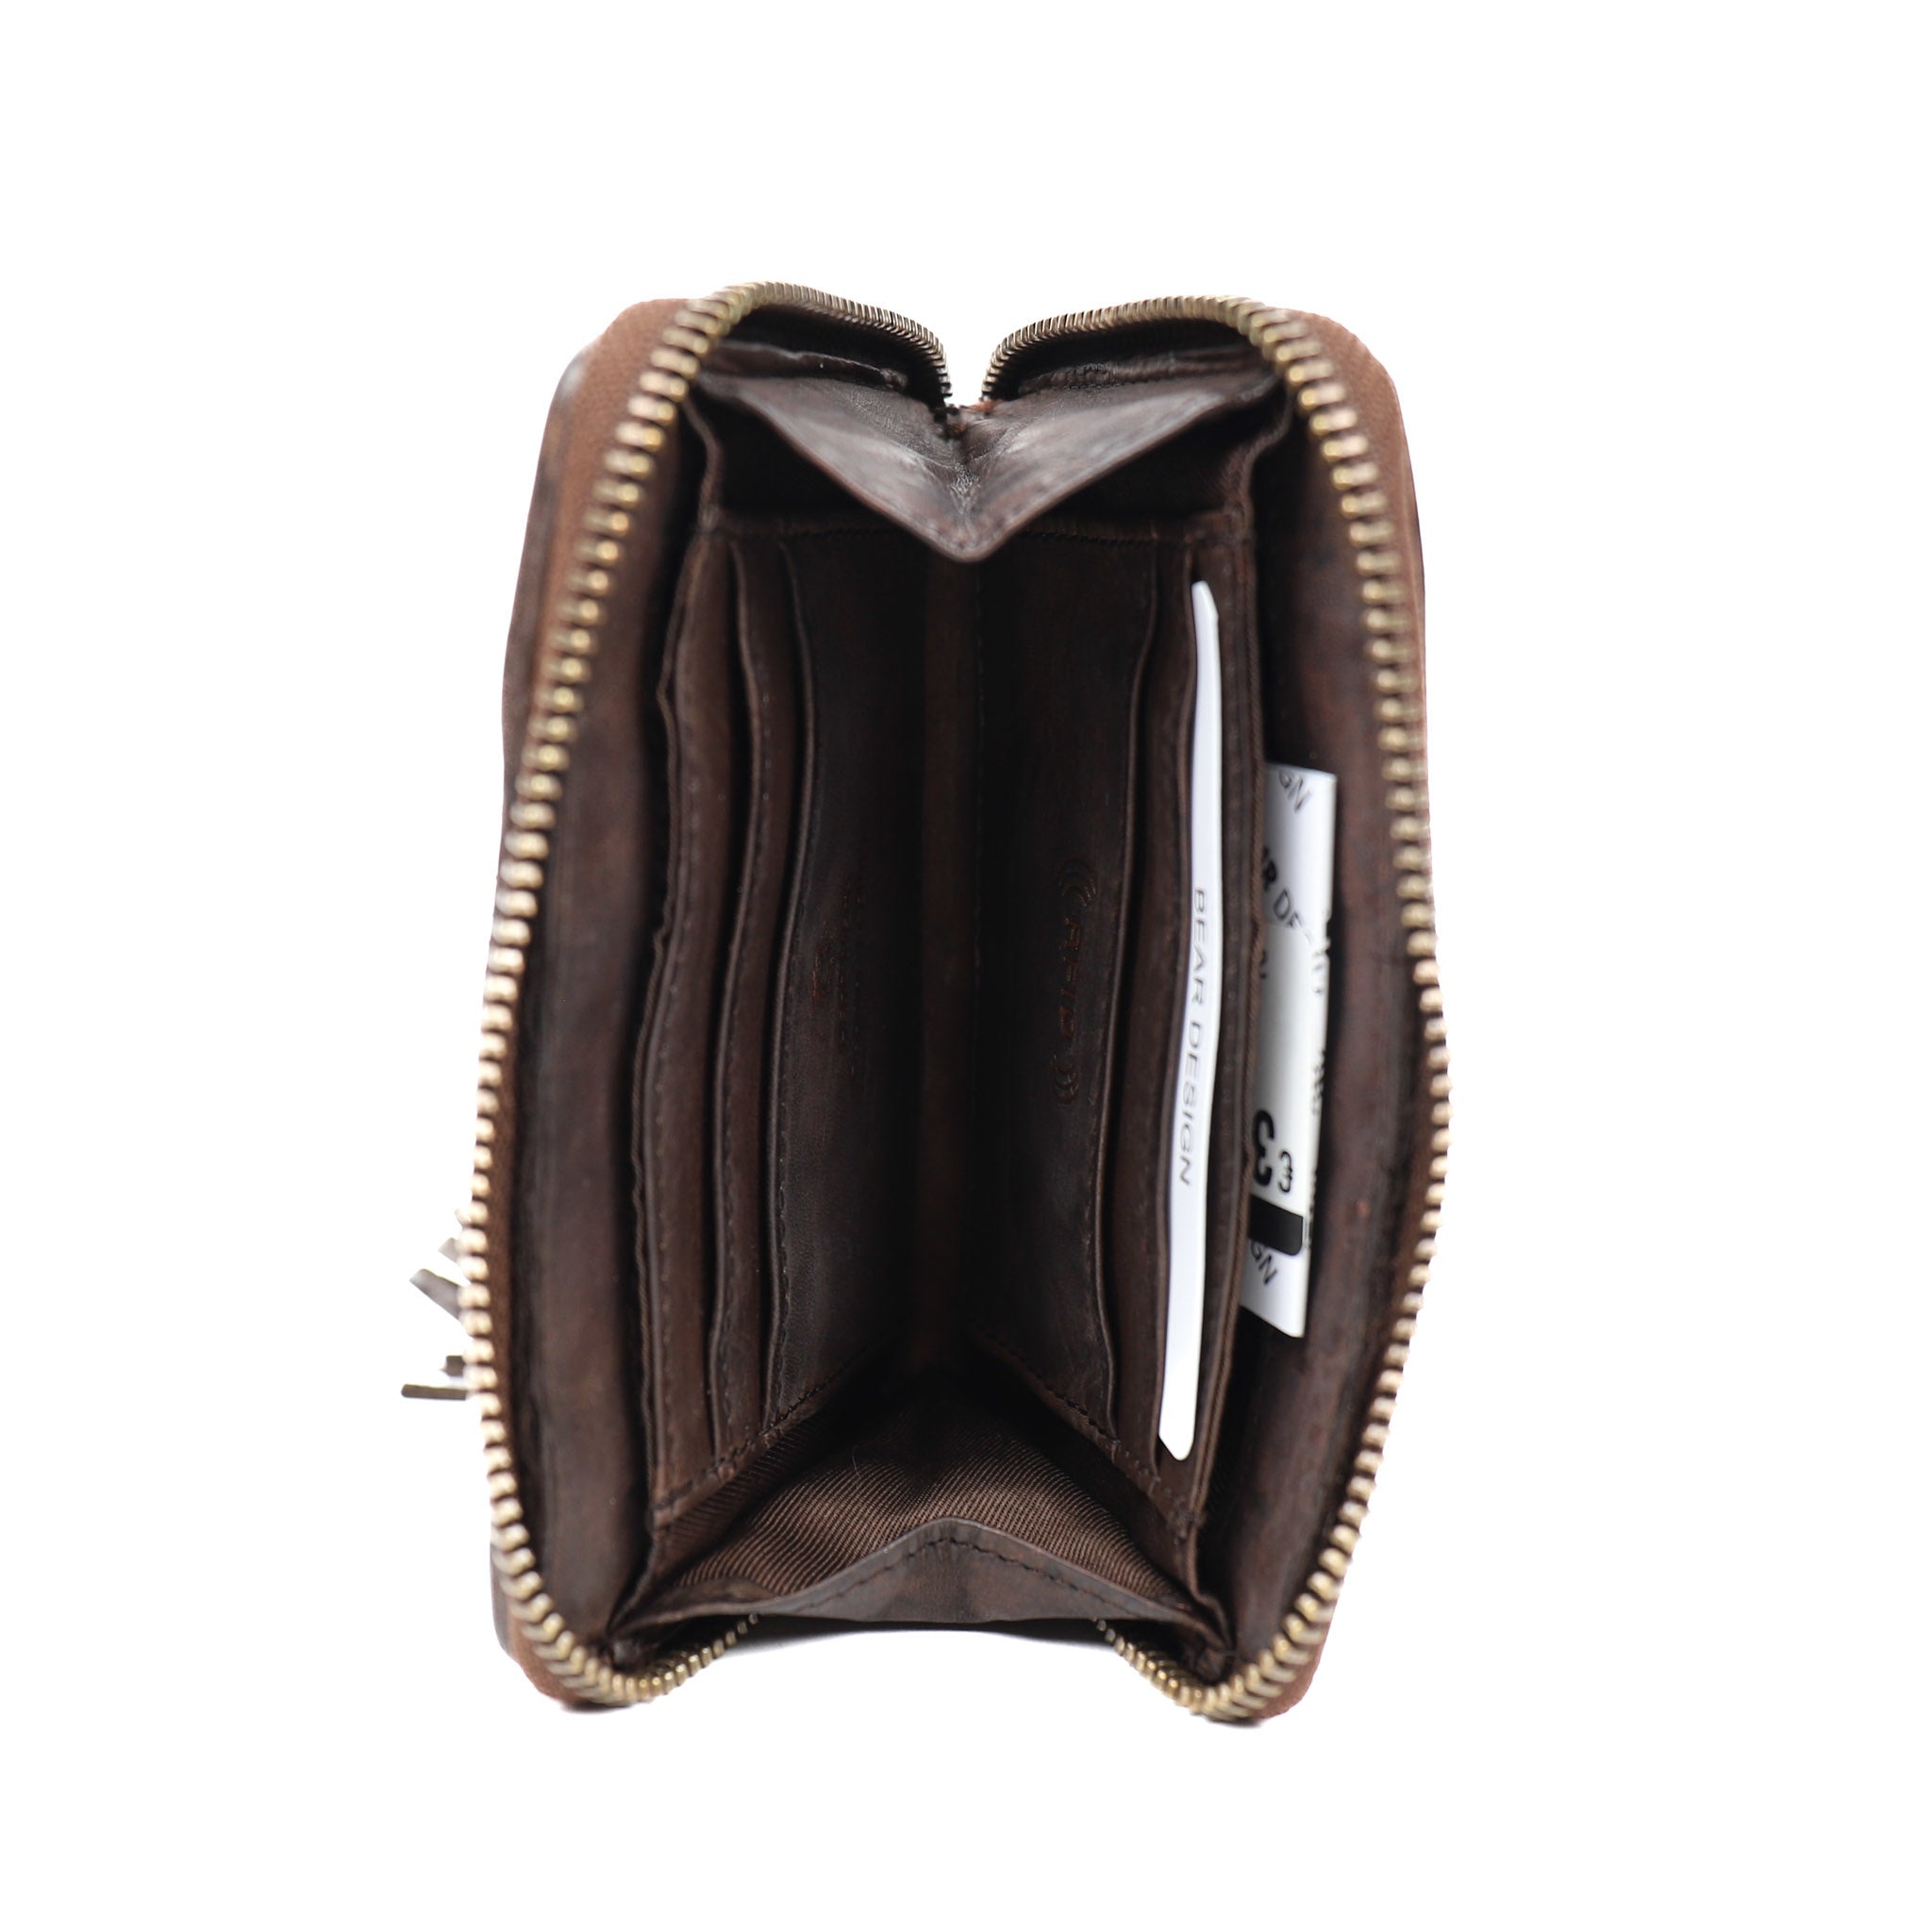 Braided purse 'Marijn' dark brown - CL 18367